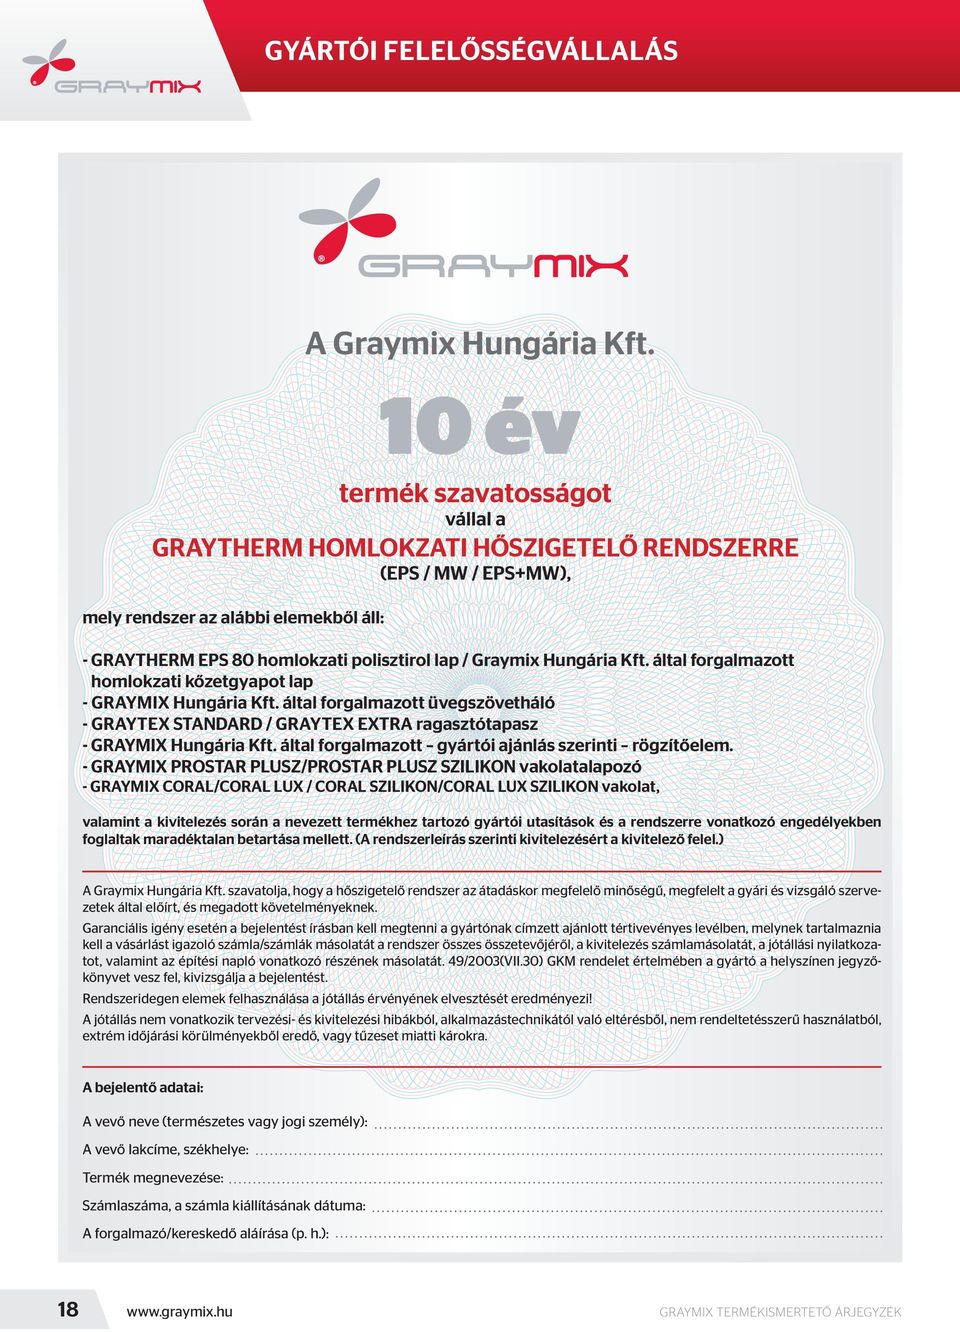 által forgalmazott homlokzati kőzetgyapot lap - Graymix Hungária Kft. által forgalmazott üvegszövetháló - Graytex STANDARD / Graytex EXTRA ragasztótapasz - GRAYMIX Hungária Kft.